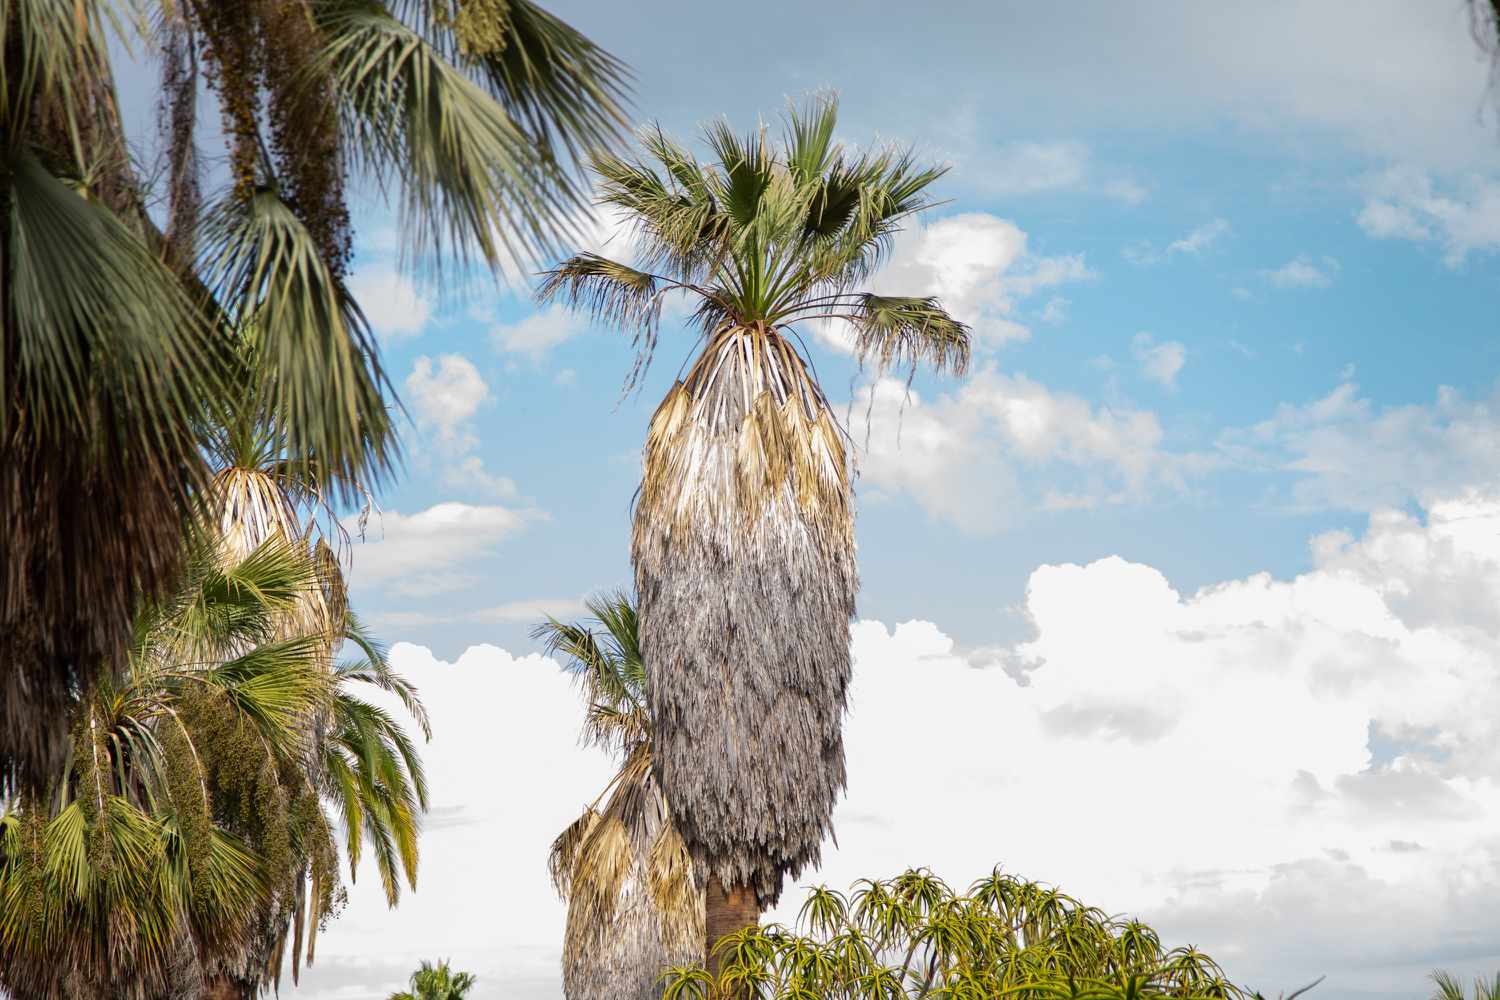 Palmier dattier avec vieilles frondes couvrant le haut du tronc et frondes clairsemées au sommet